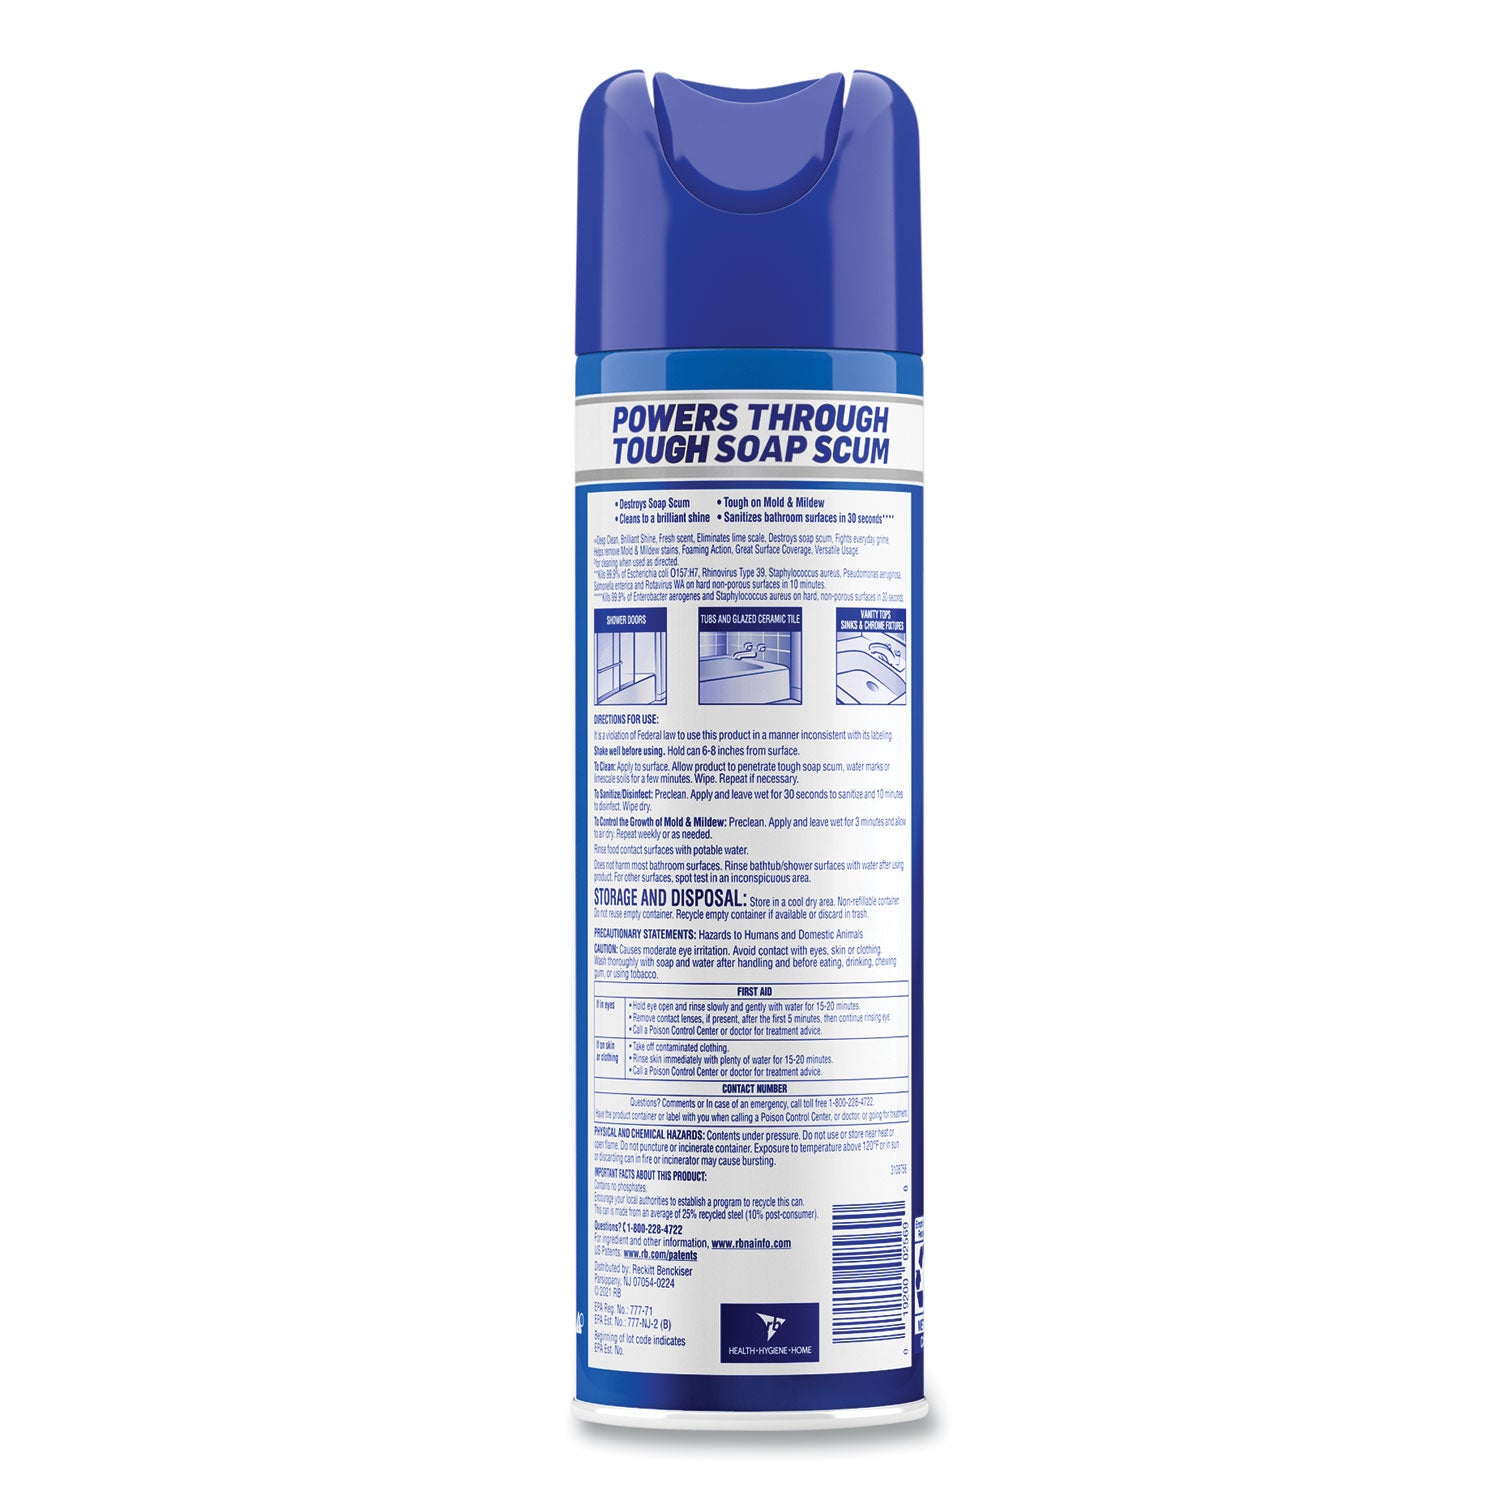 Power Foam Bathroom Cleaner, 24 oz Aerosol Spray - 